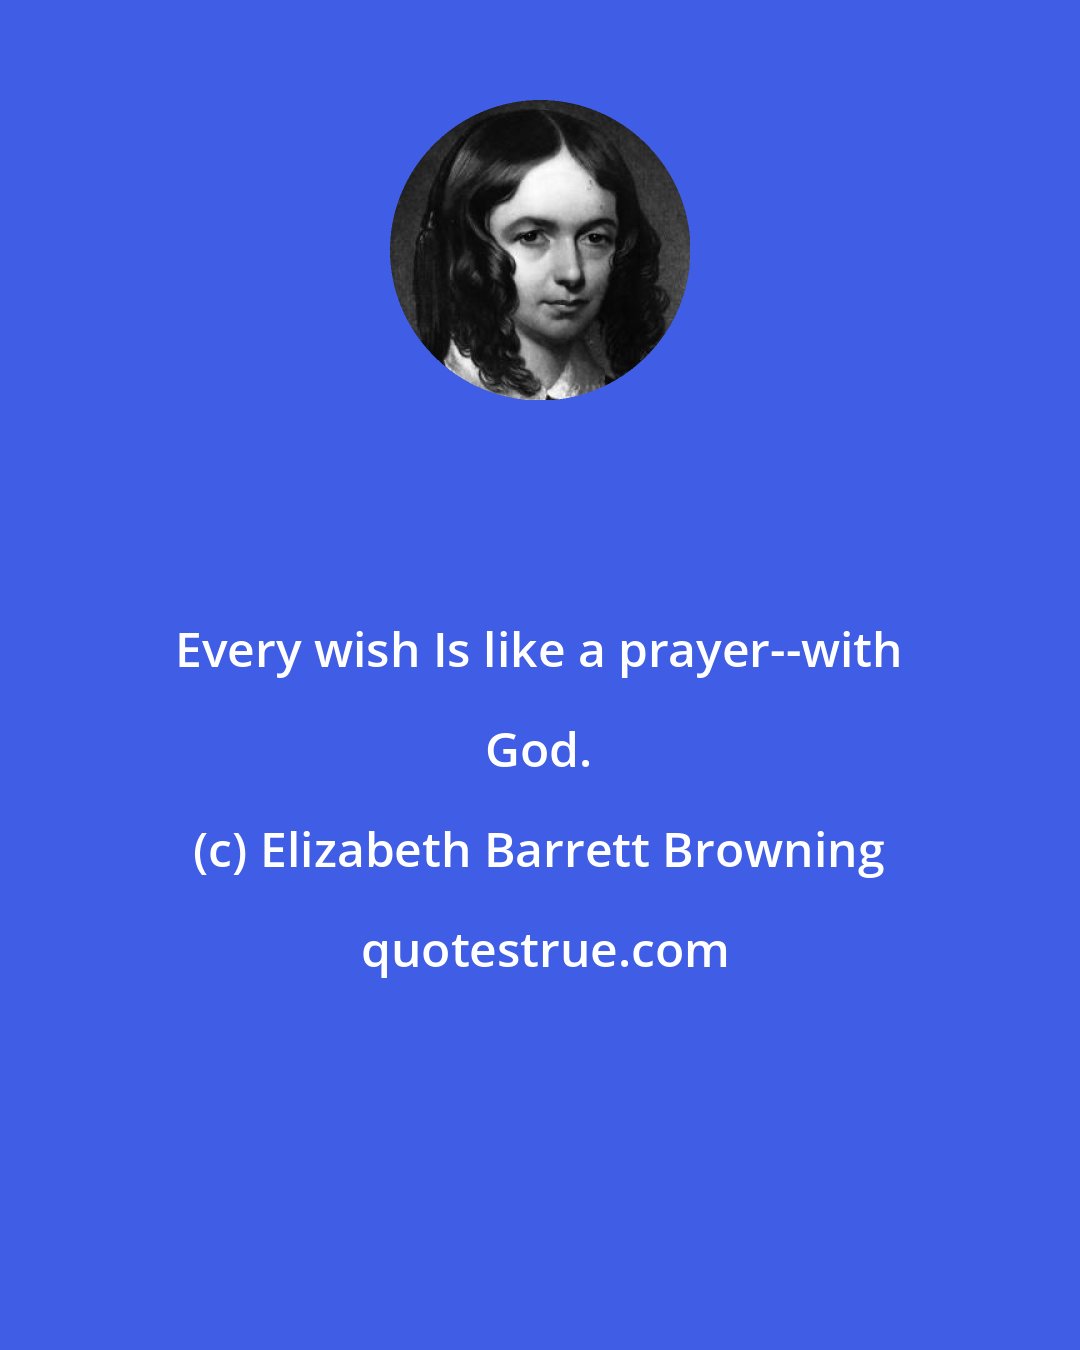 Elizabeth Barrett Browning: Every wish Is like a prayer--with God.